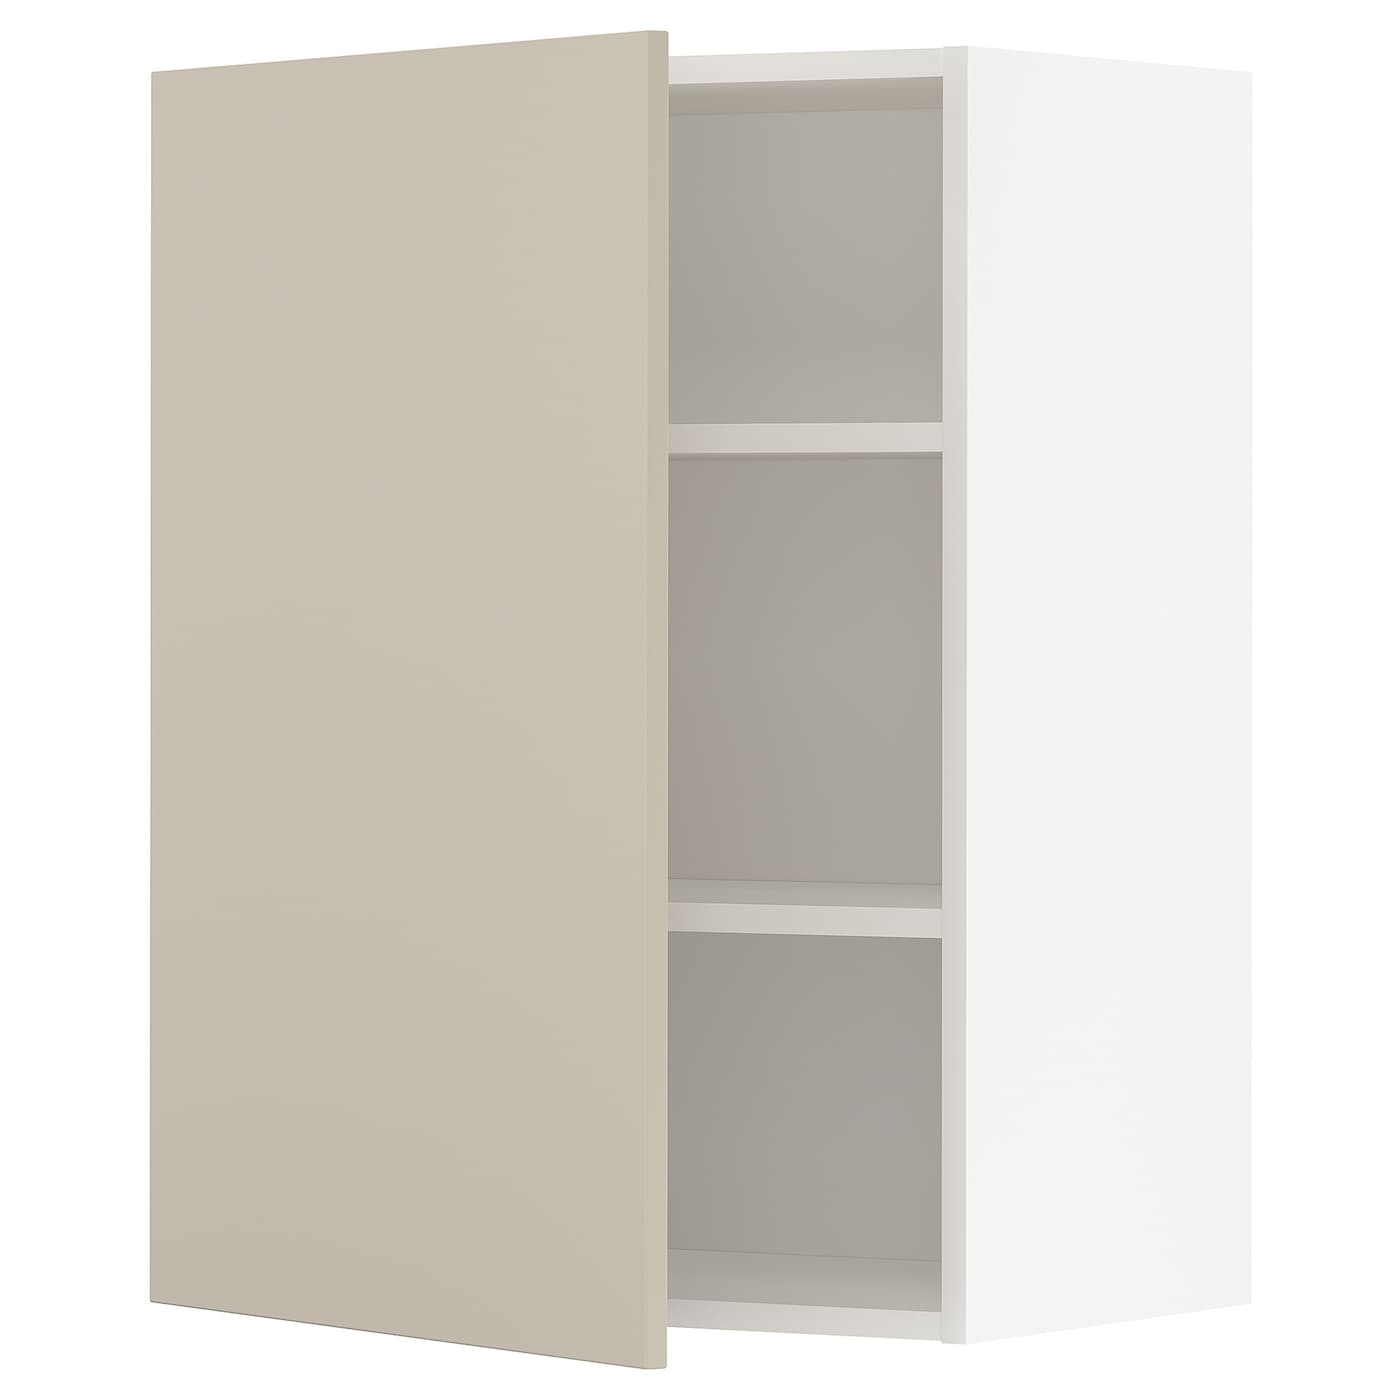 Навесной шкаф с полкой - METOD IKEA/ МЕТОД ИКЕА, 80х60 см, белый/светло-коричневый